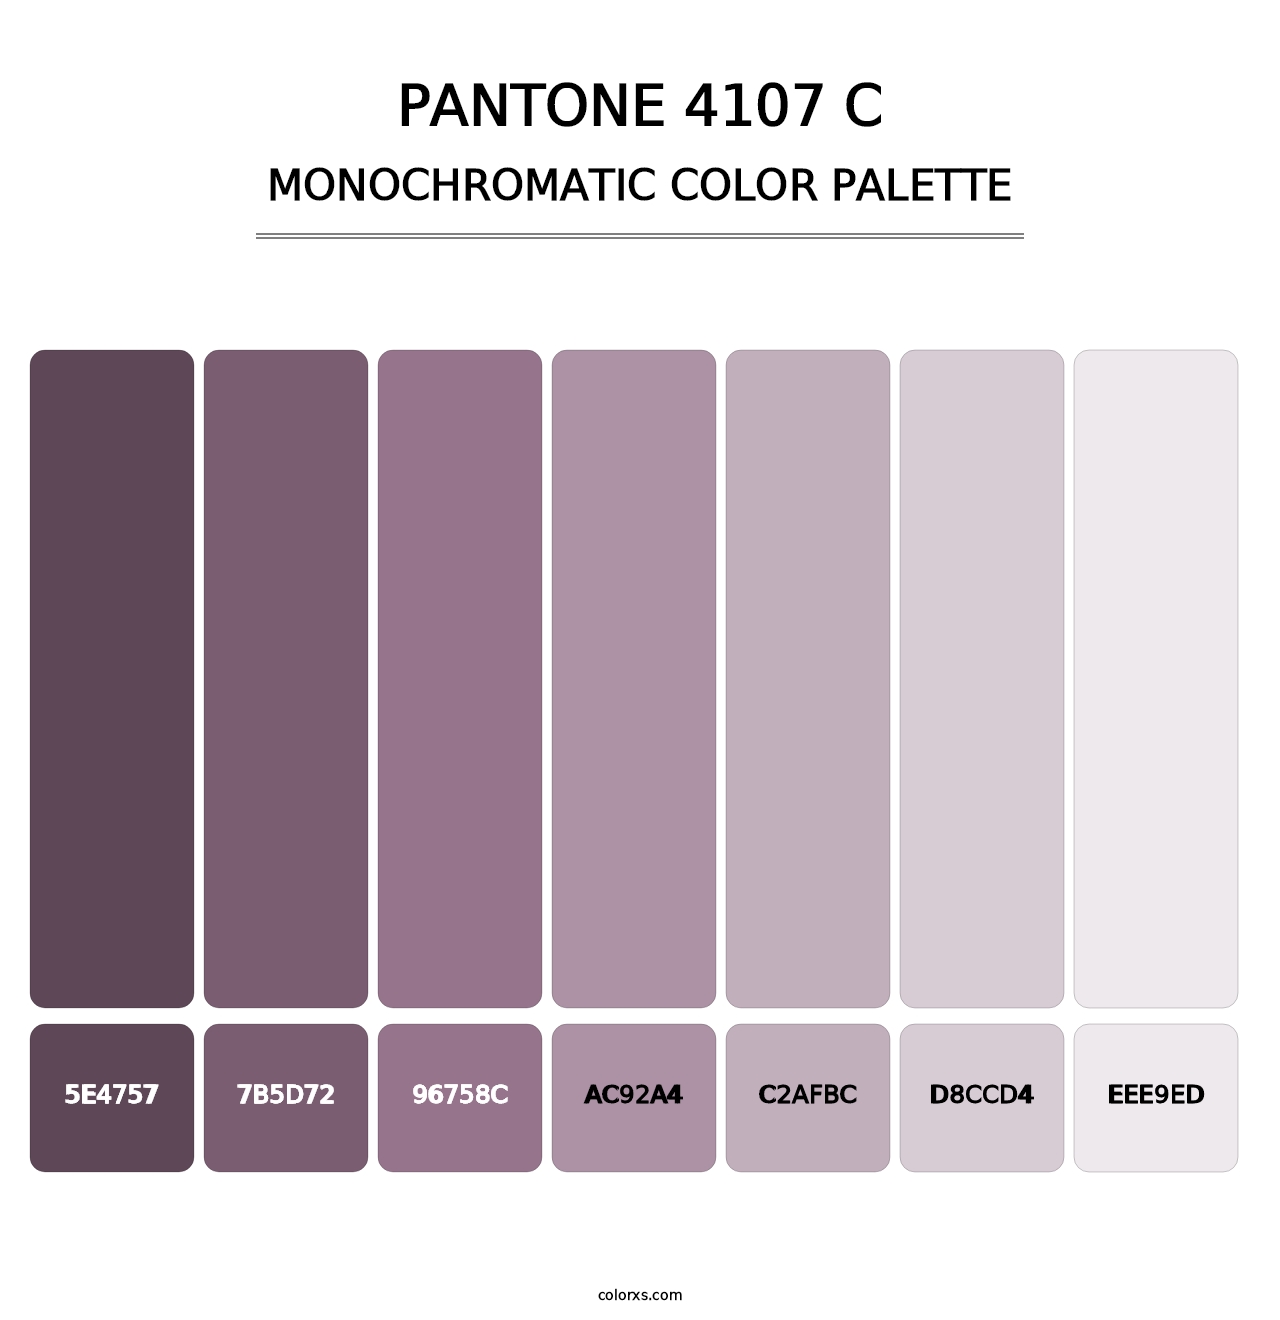 PANTONE 4107 C - Monochromatic Color Palette